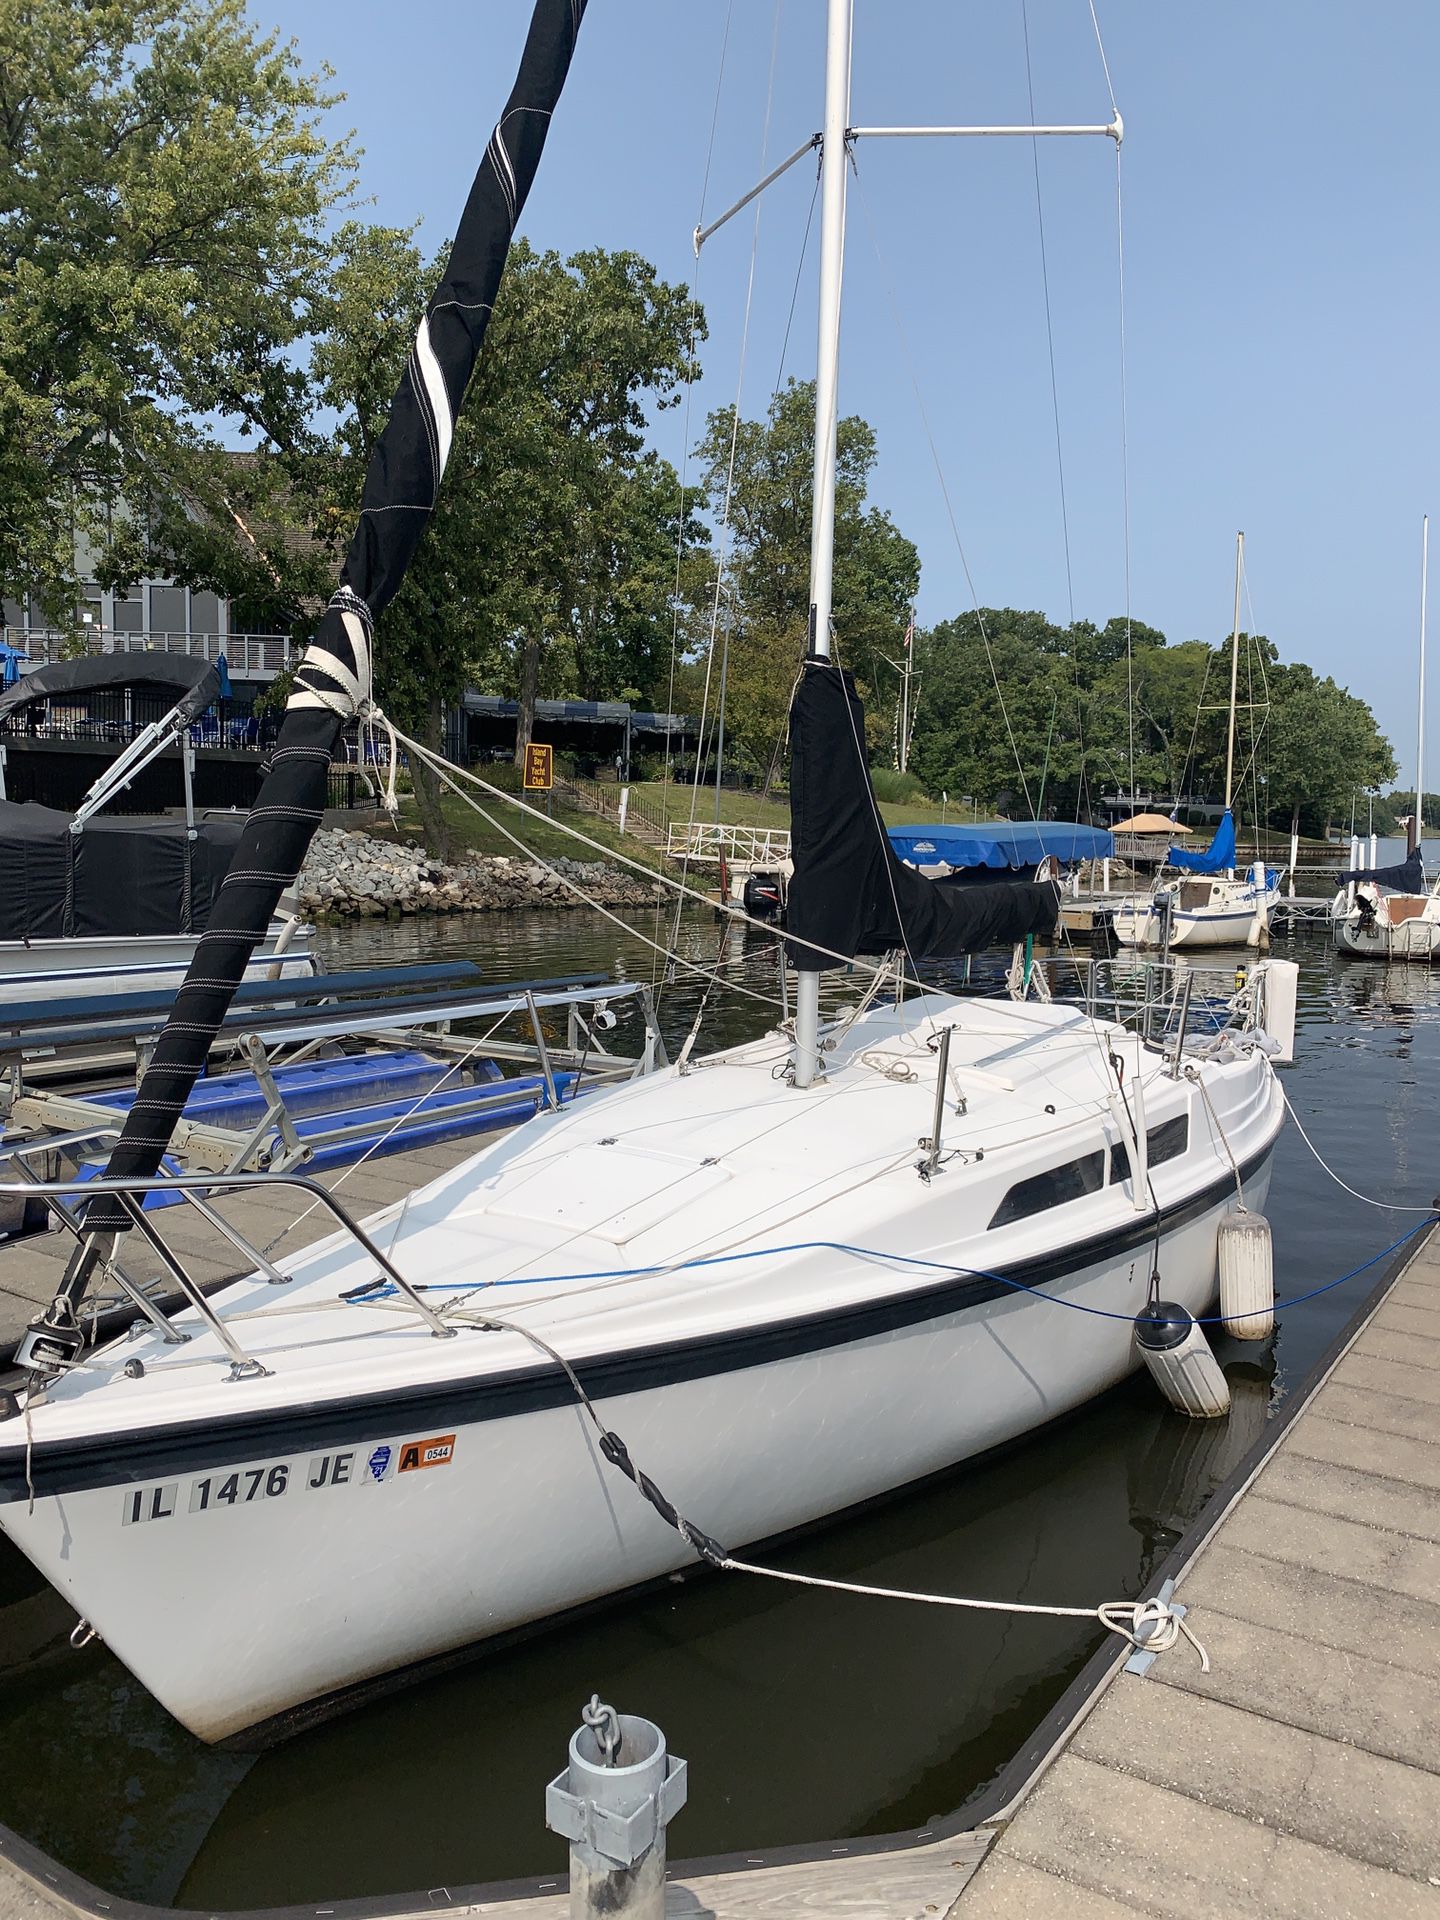 macgregor 26 ft sailboat for sale